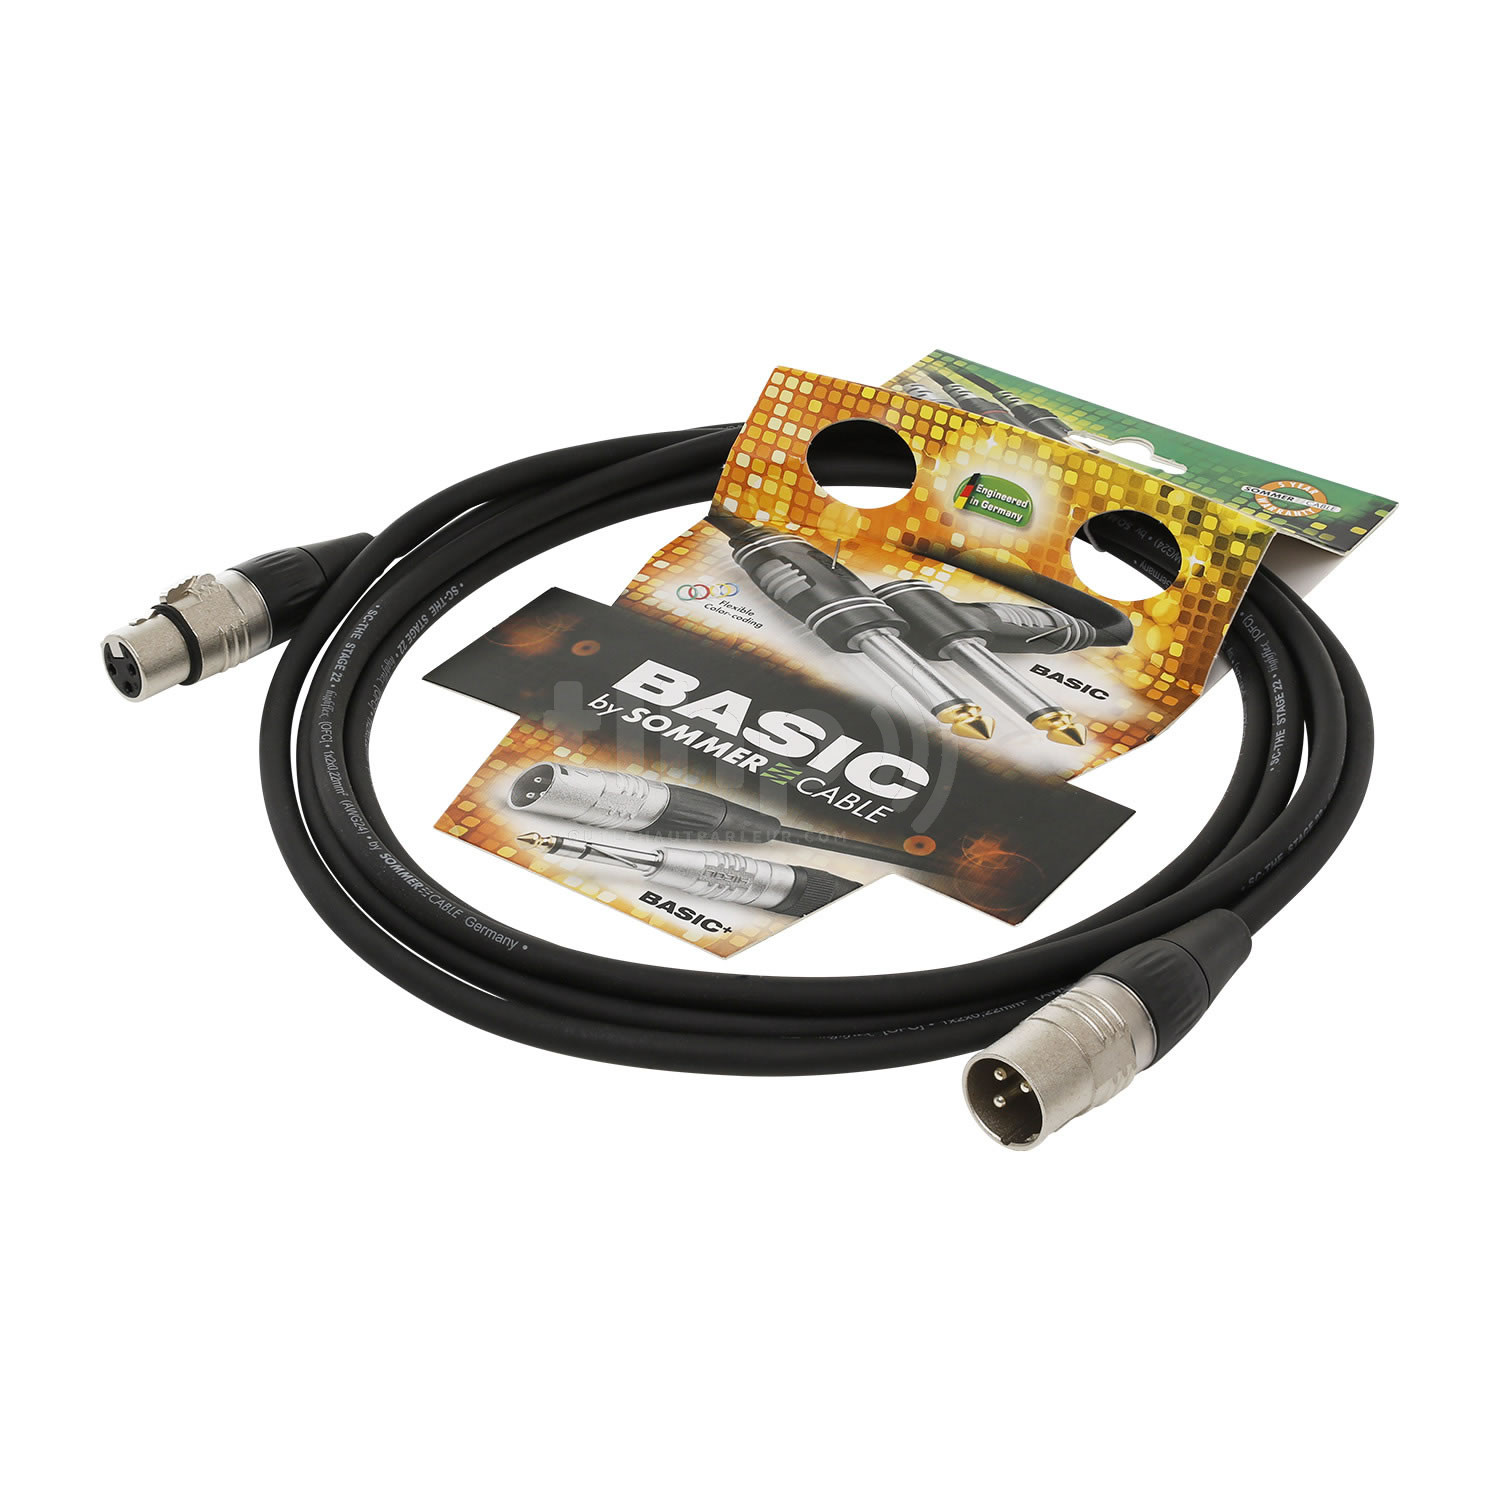 Câble XLR mâle/femelle, noir, 1m, avec câble Sommercable Stage 22 Highflex  et fiches Hicon contacts